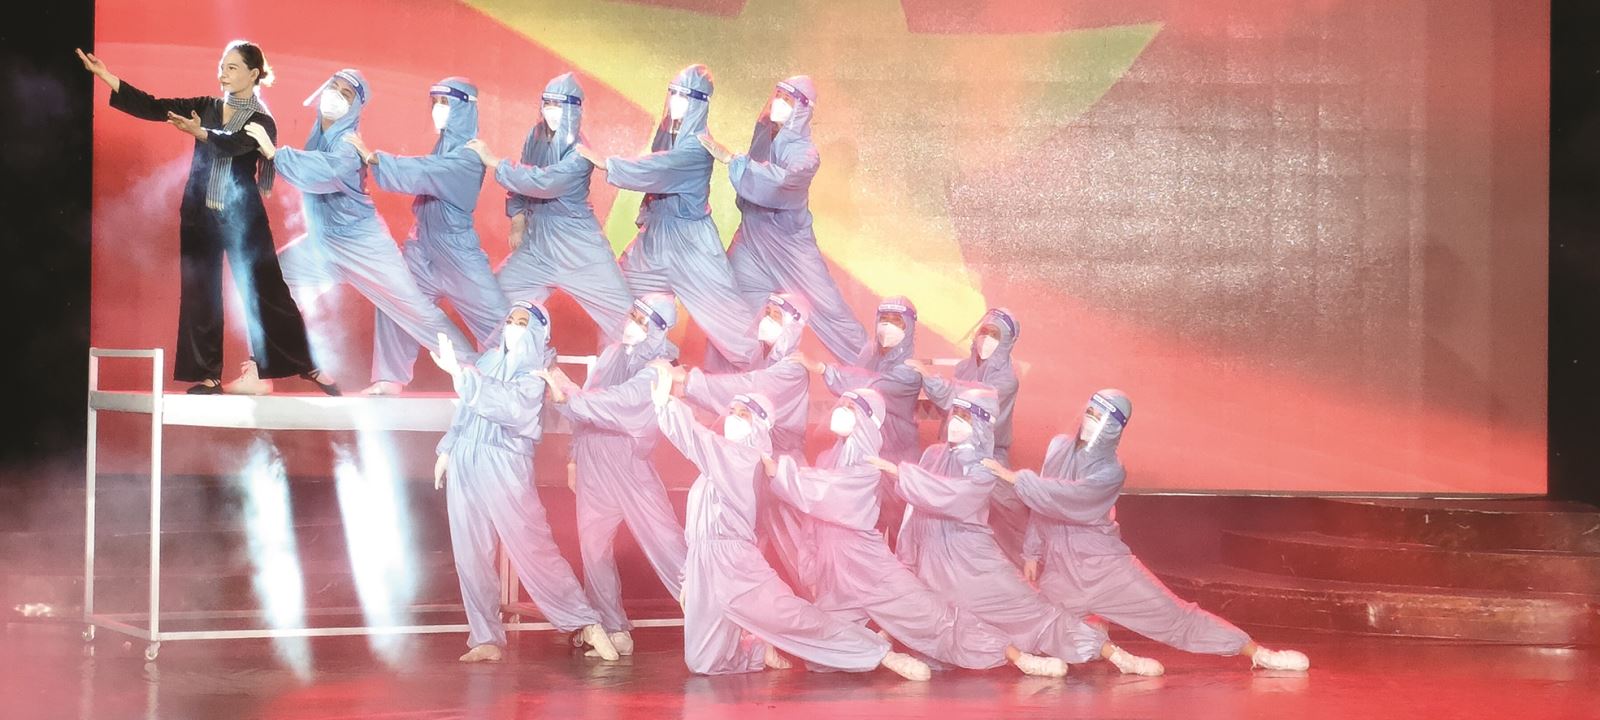 Trung tâm Văn hóa nghệ thuật tỉnh An Giang: Đổi mới các hoạt động văn hóa nghệ thuật trong tình hình mới